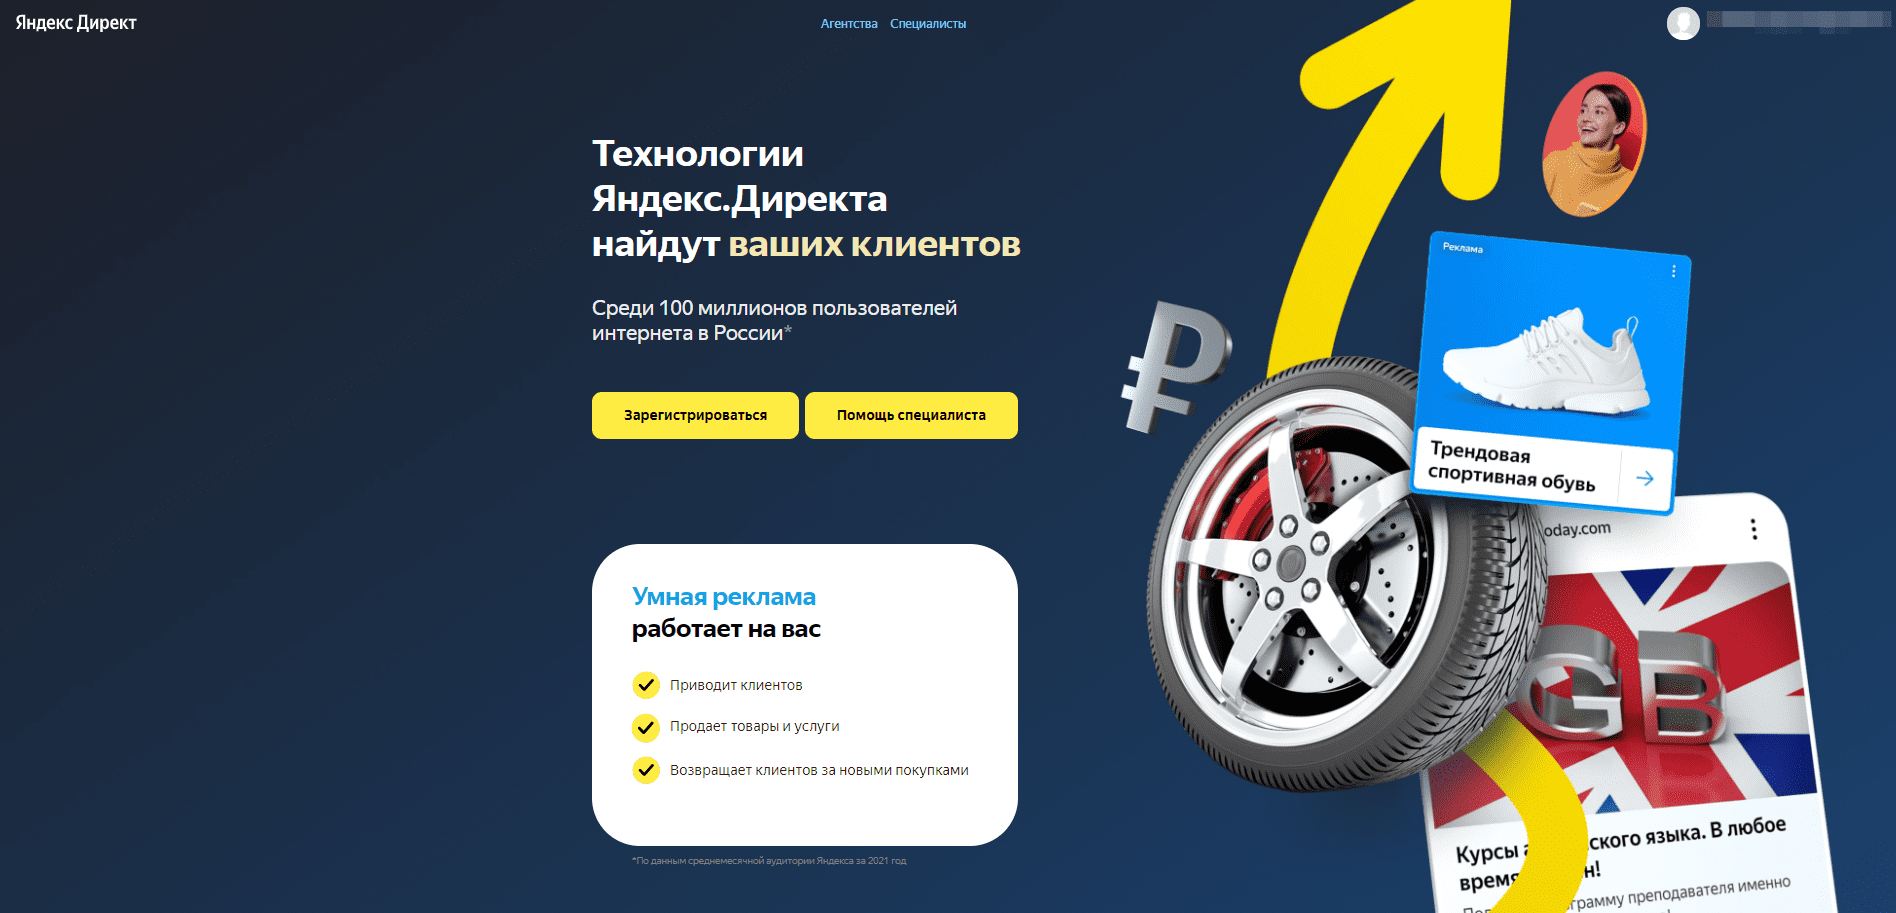 Возможности контекстной рекламы Яндекс.Директ